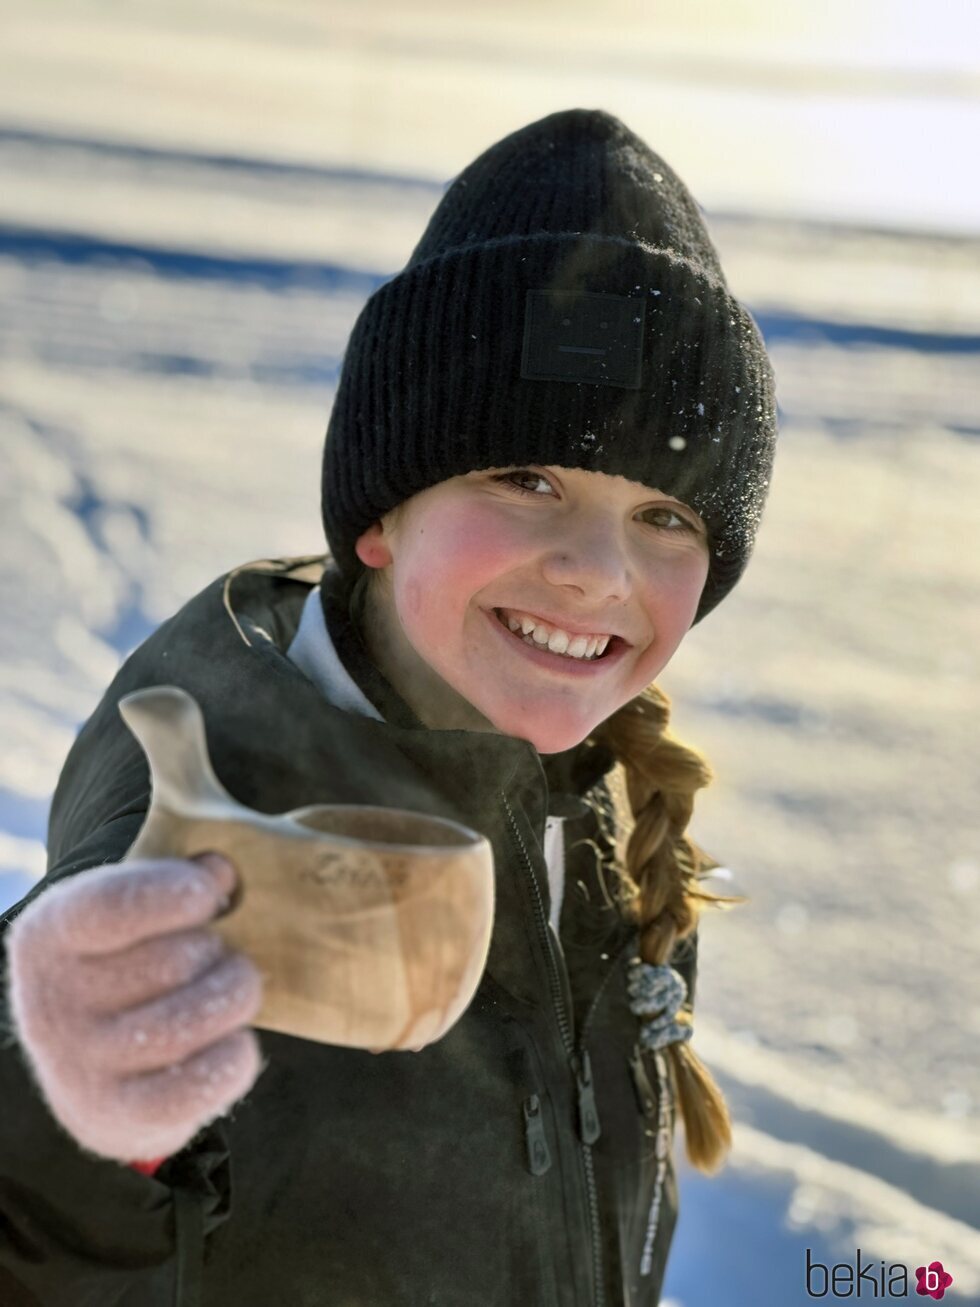 Estelle de Suecia, muy sonriente en la nieve